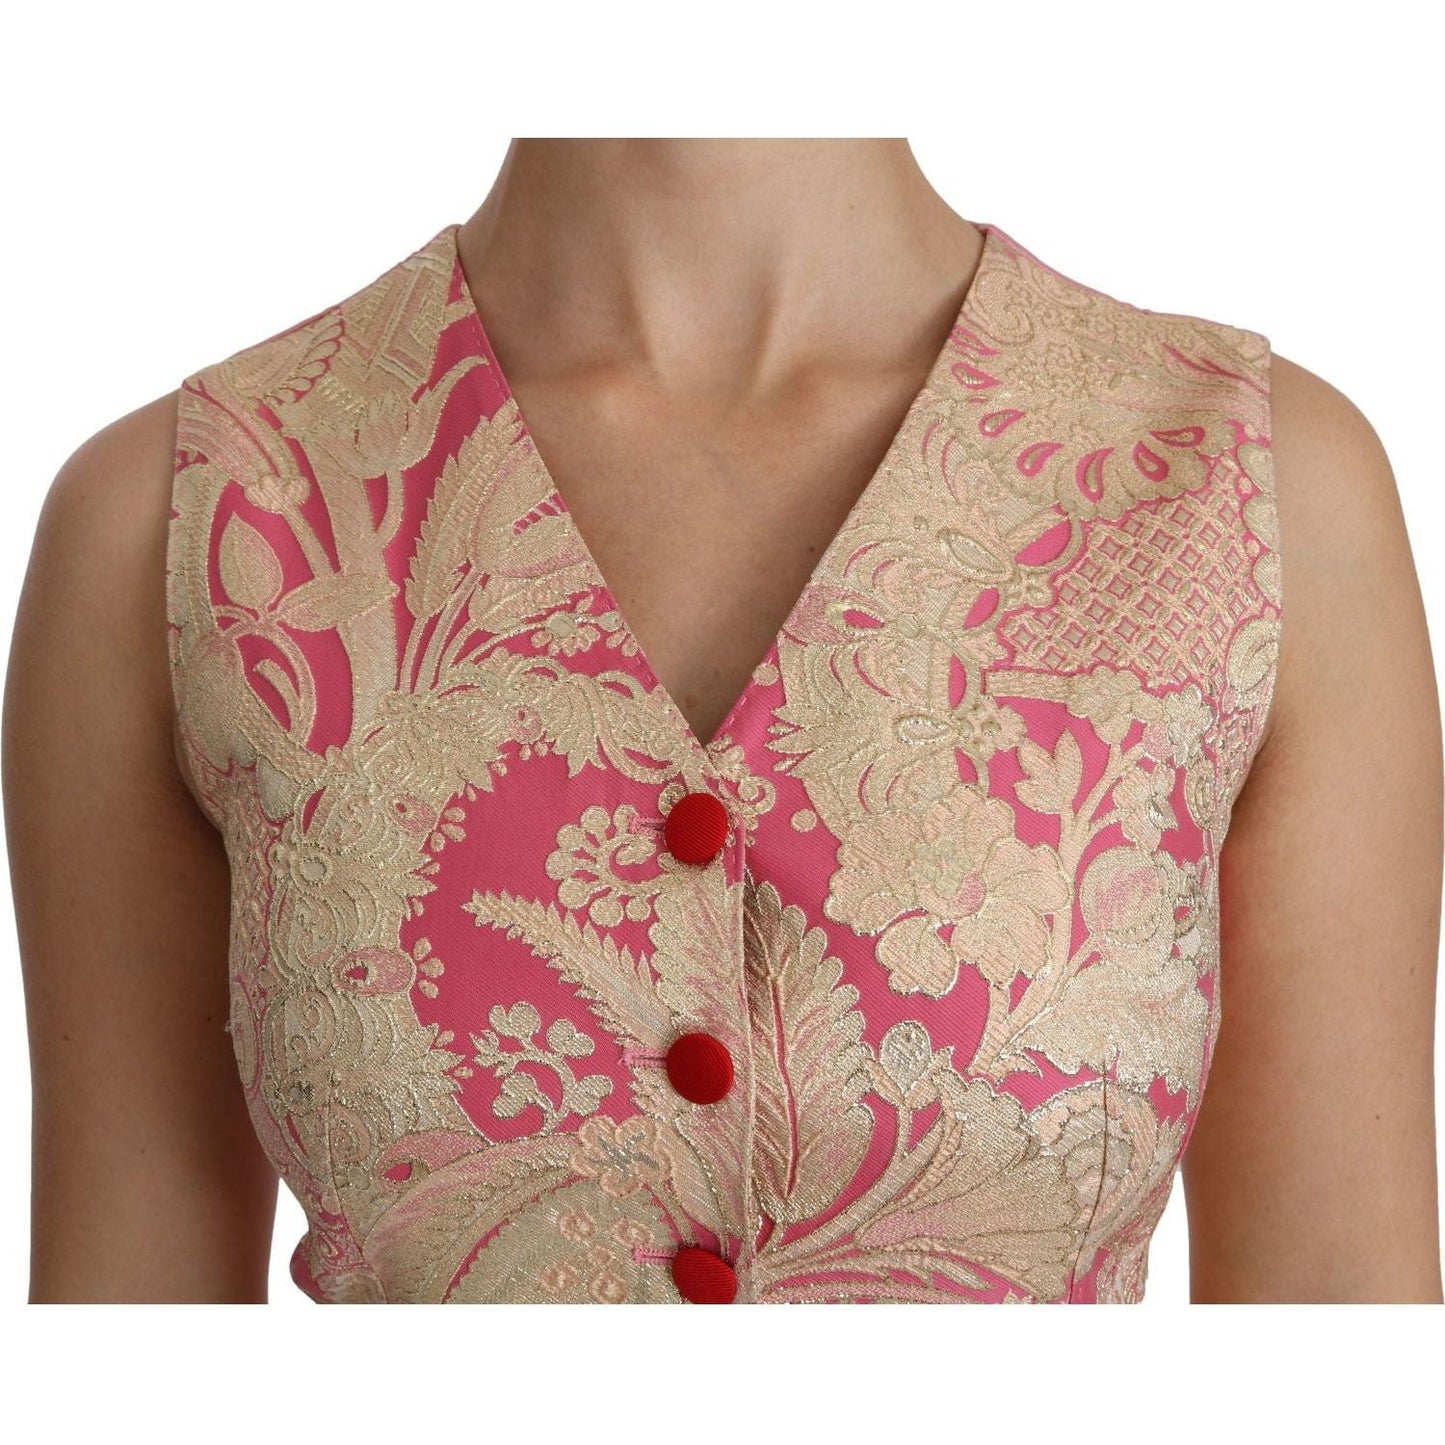 Dolce & Gabbana Elegant Silk Blend V-Neck Vest Top pink-gold-brocade-waistcoat-vest-blouse-top